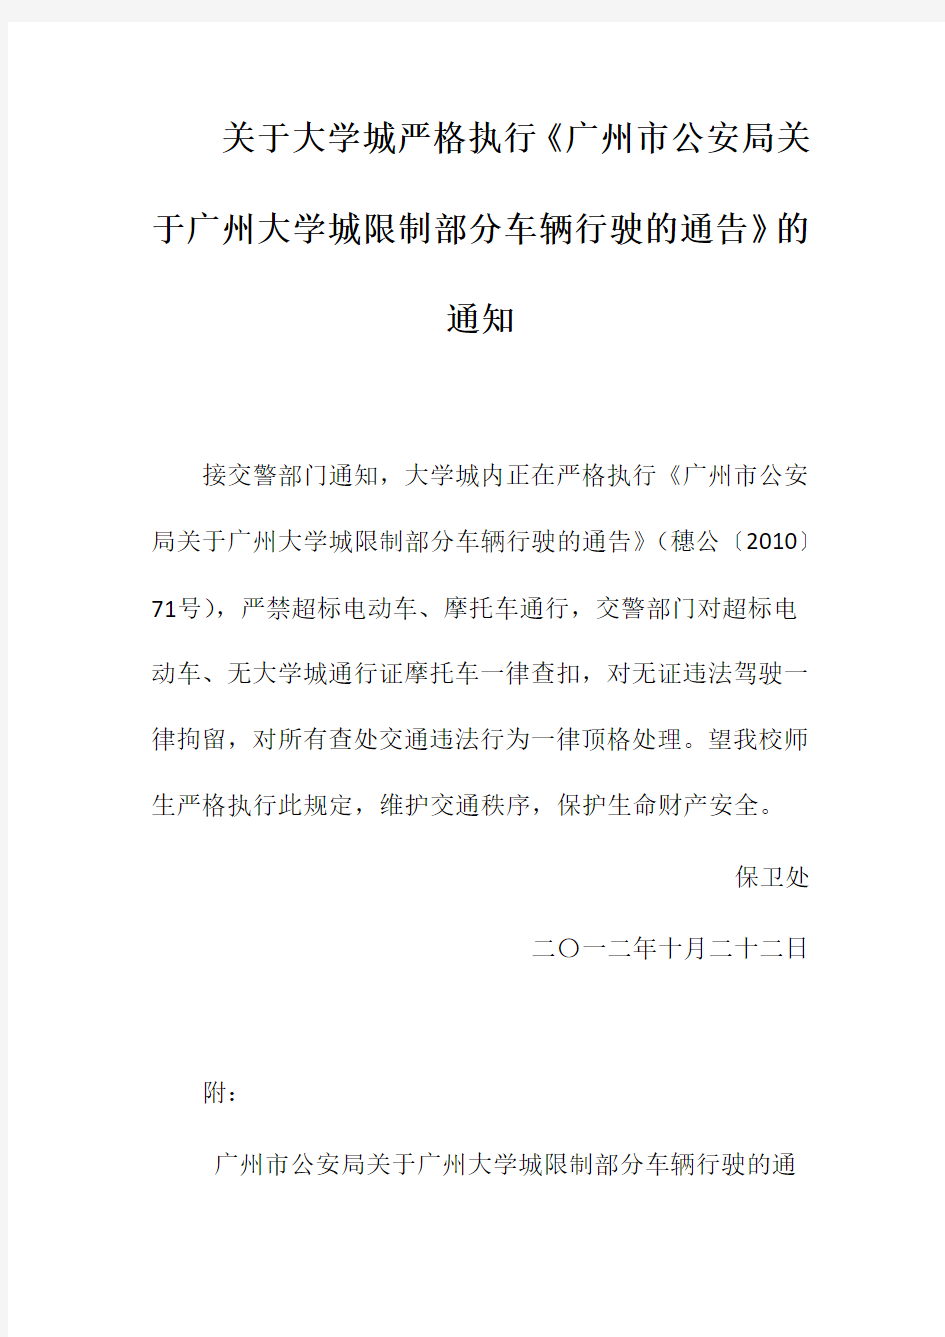 关于大学城严格执行《广州市公安局关于广州大学城限制部分车辆行驶的通告》的通知